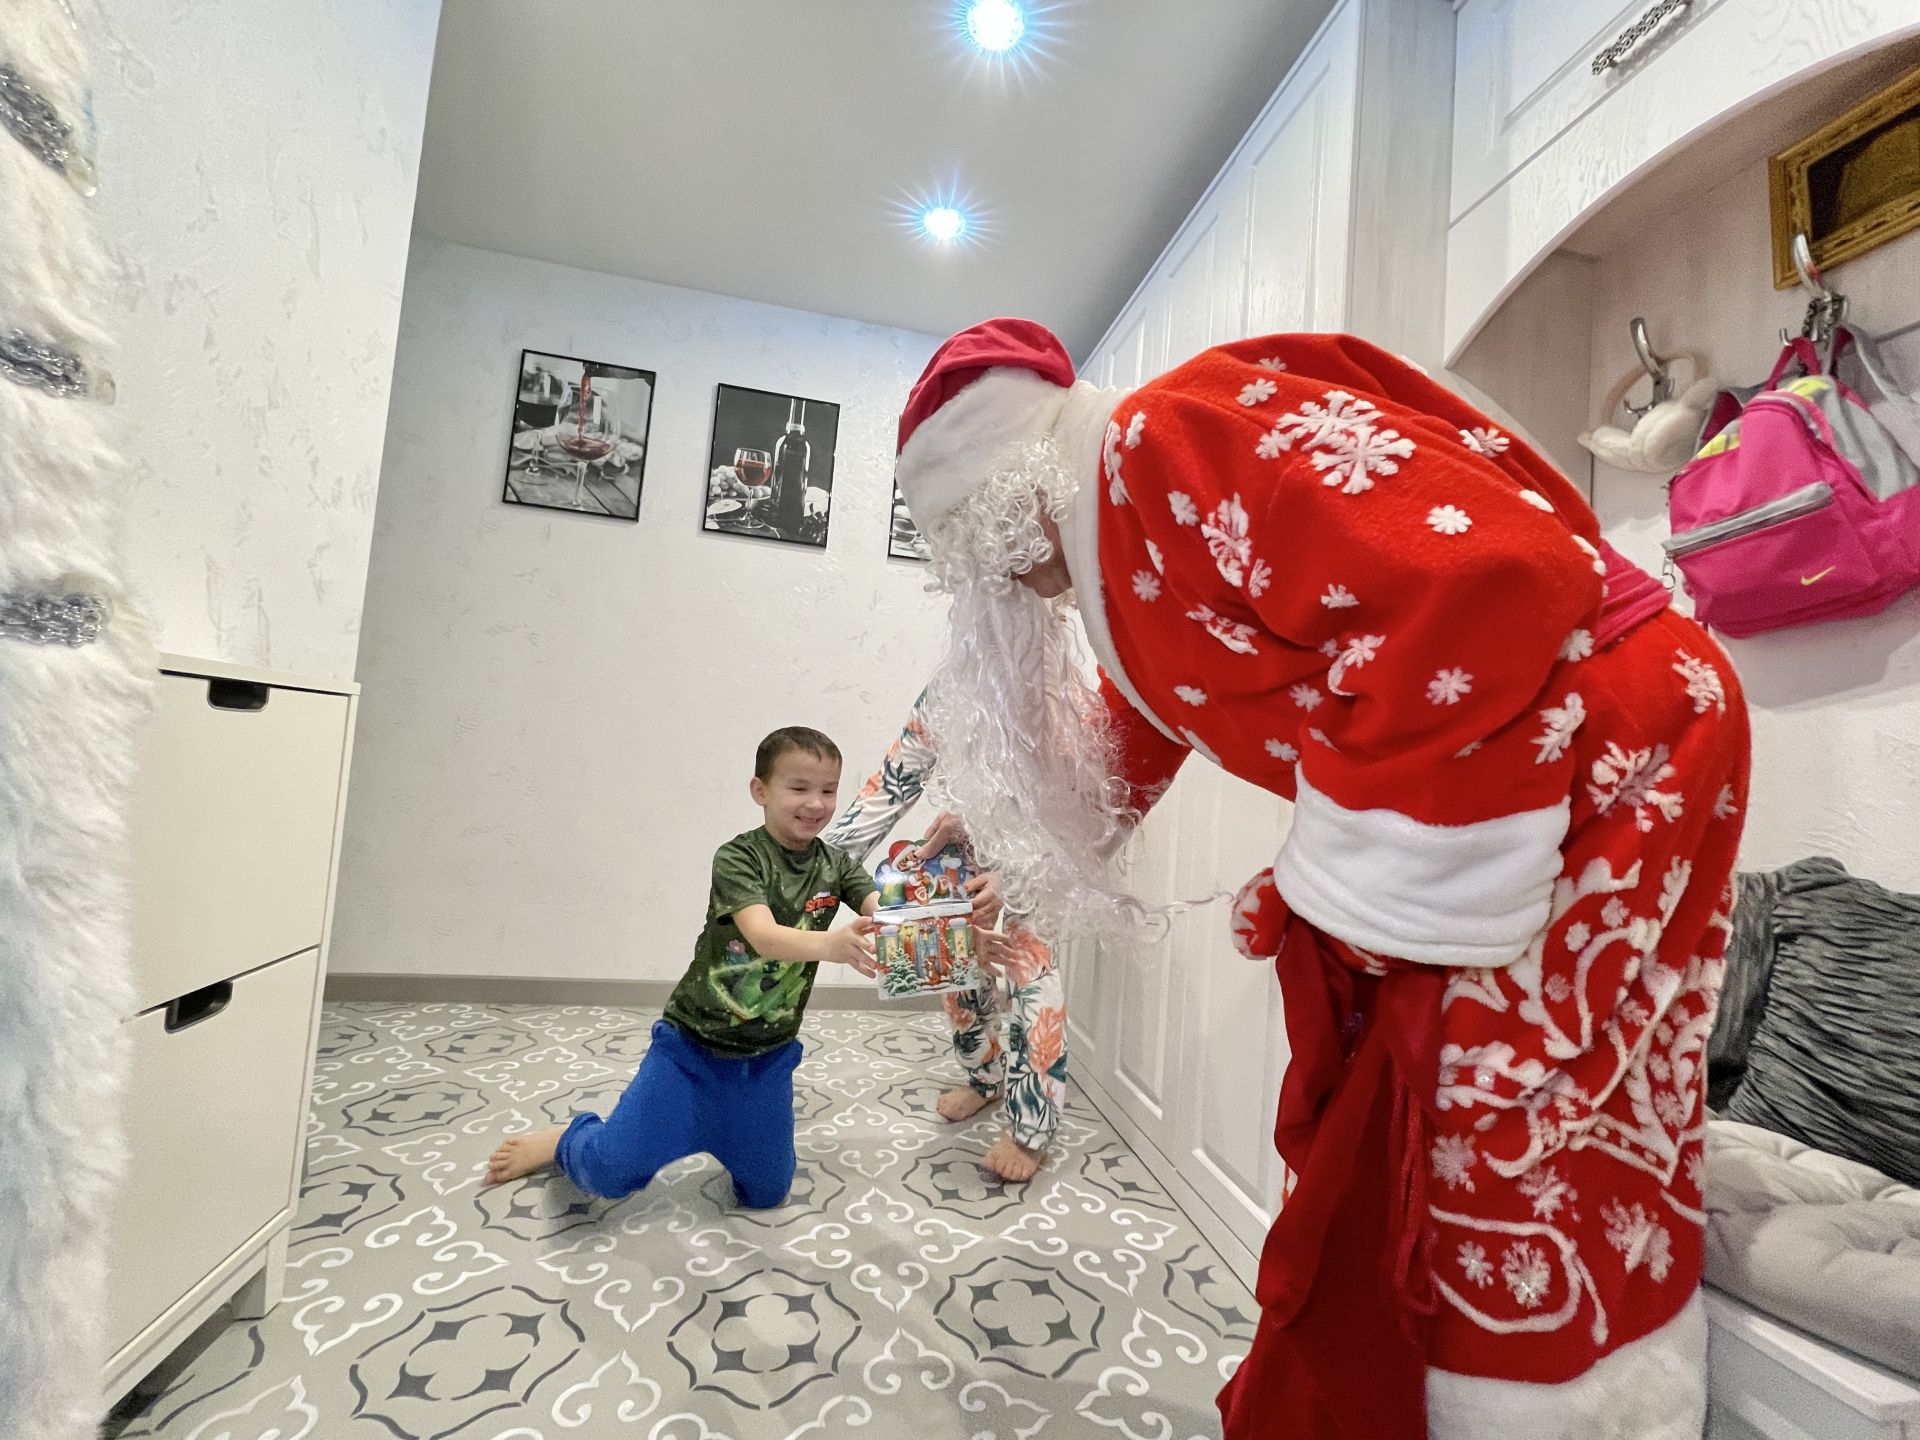 У жителей 46 комплекса Набережных Челнов есть персональный Дед Мороз